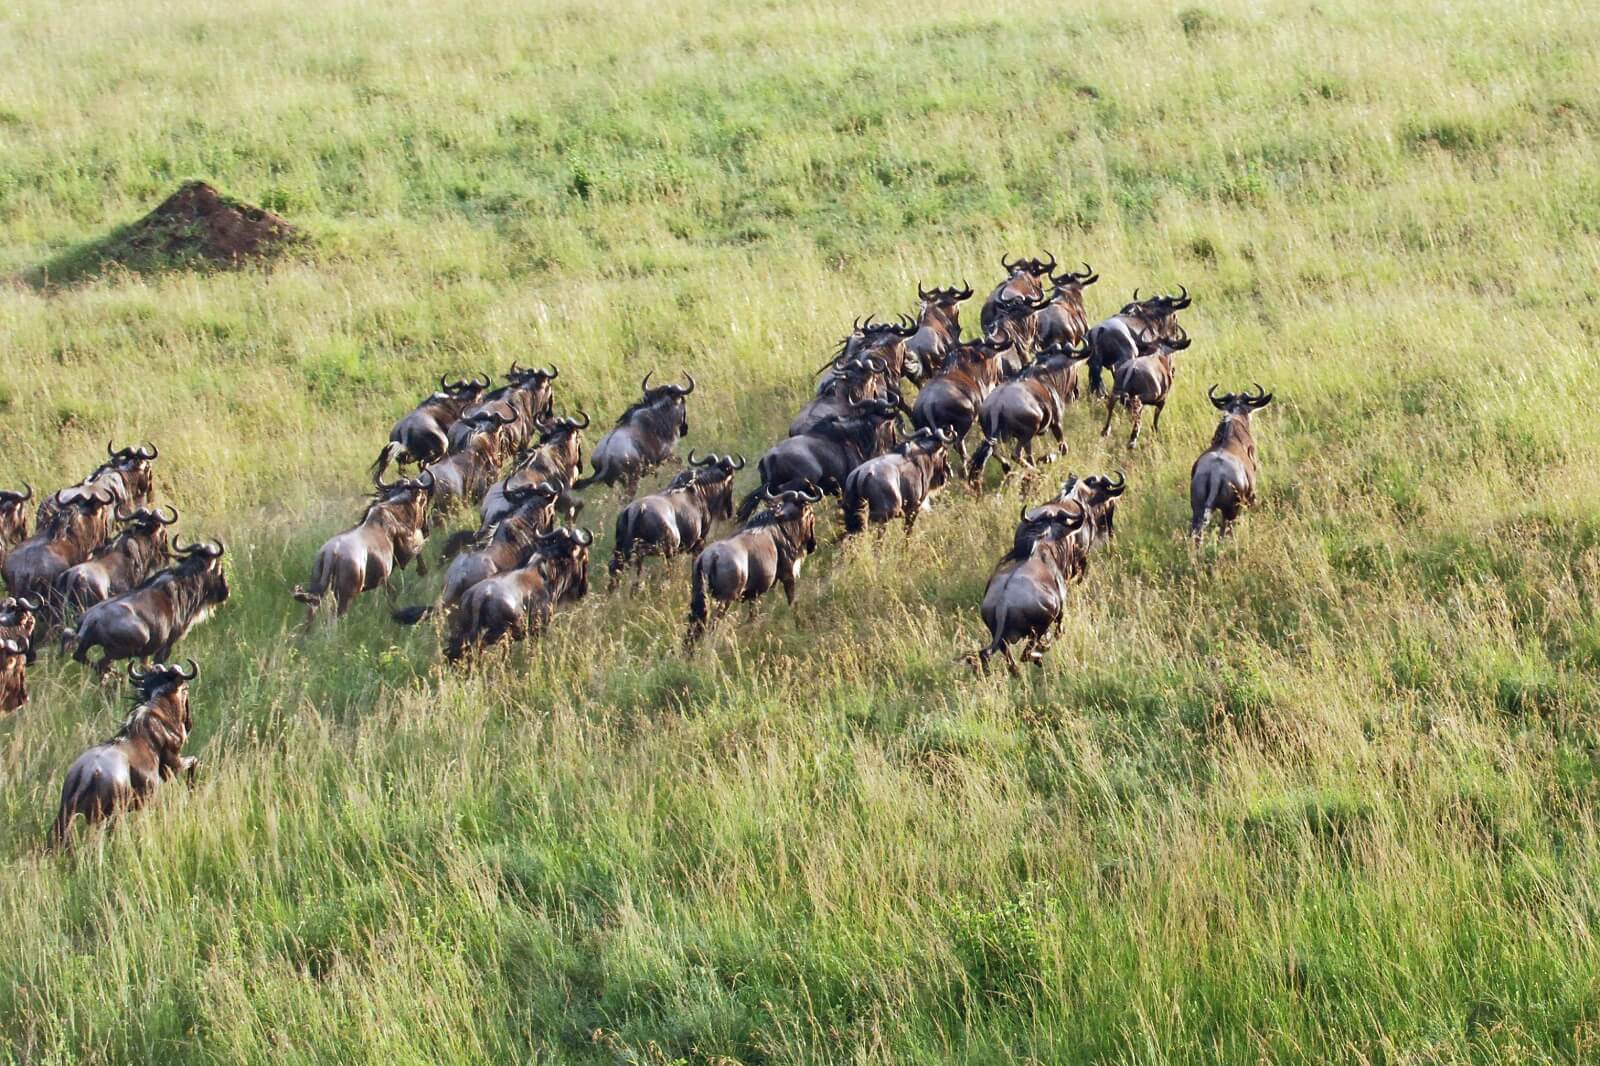 Serengeti Grumeti image